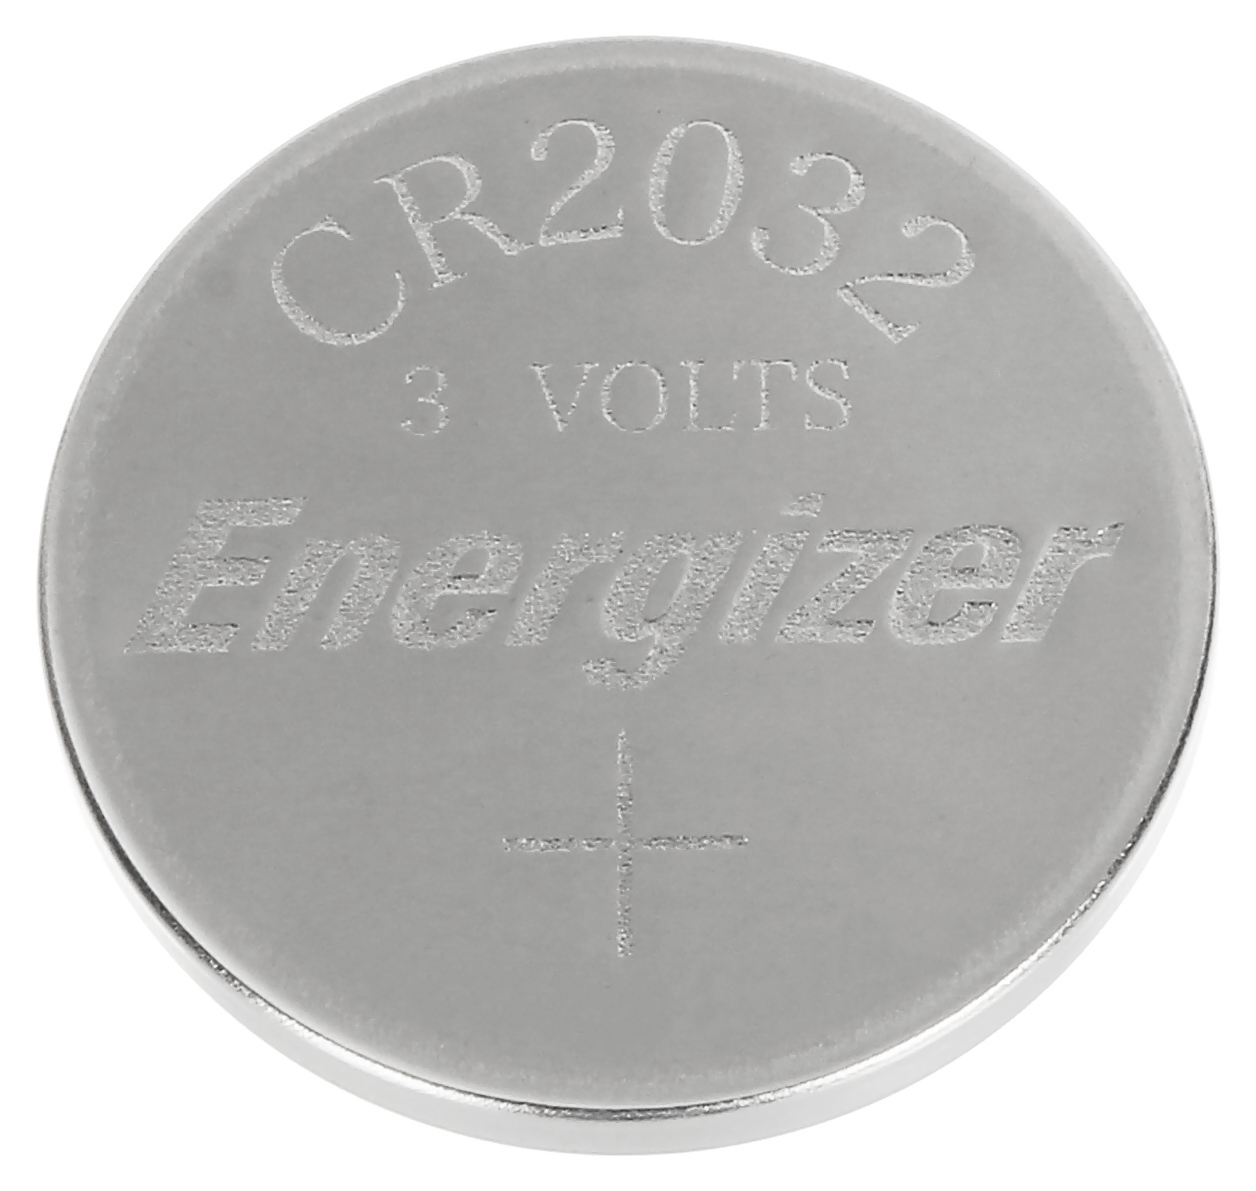 Bateria CR2032 - Lithium 3 Voltios